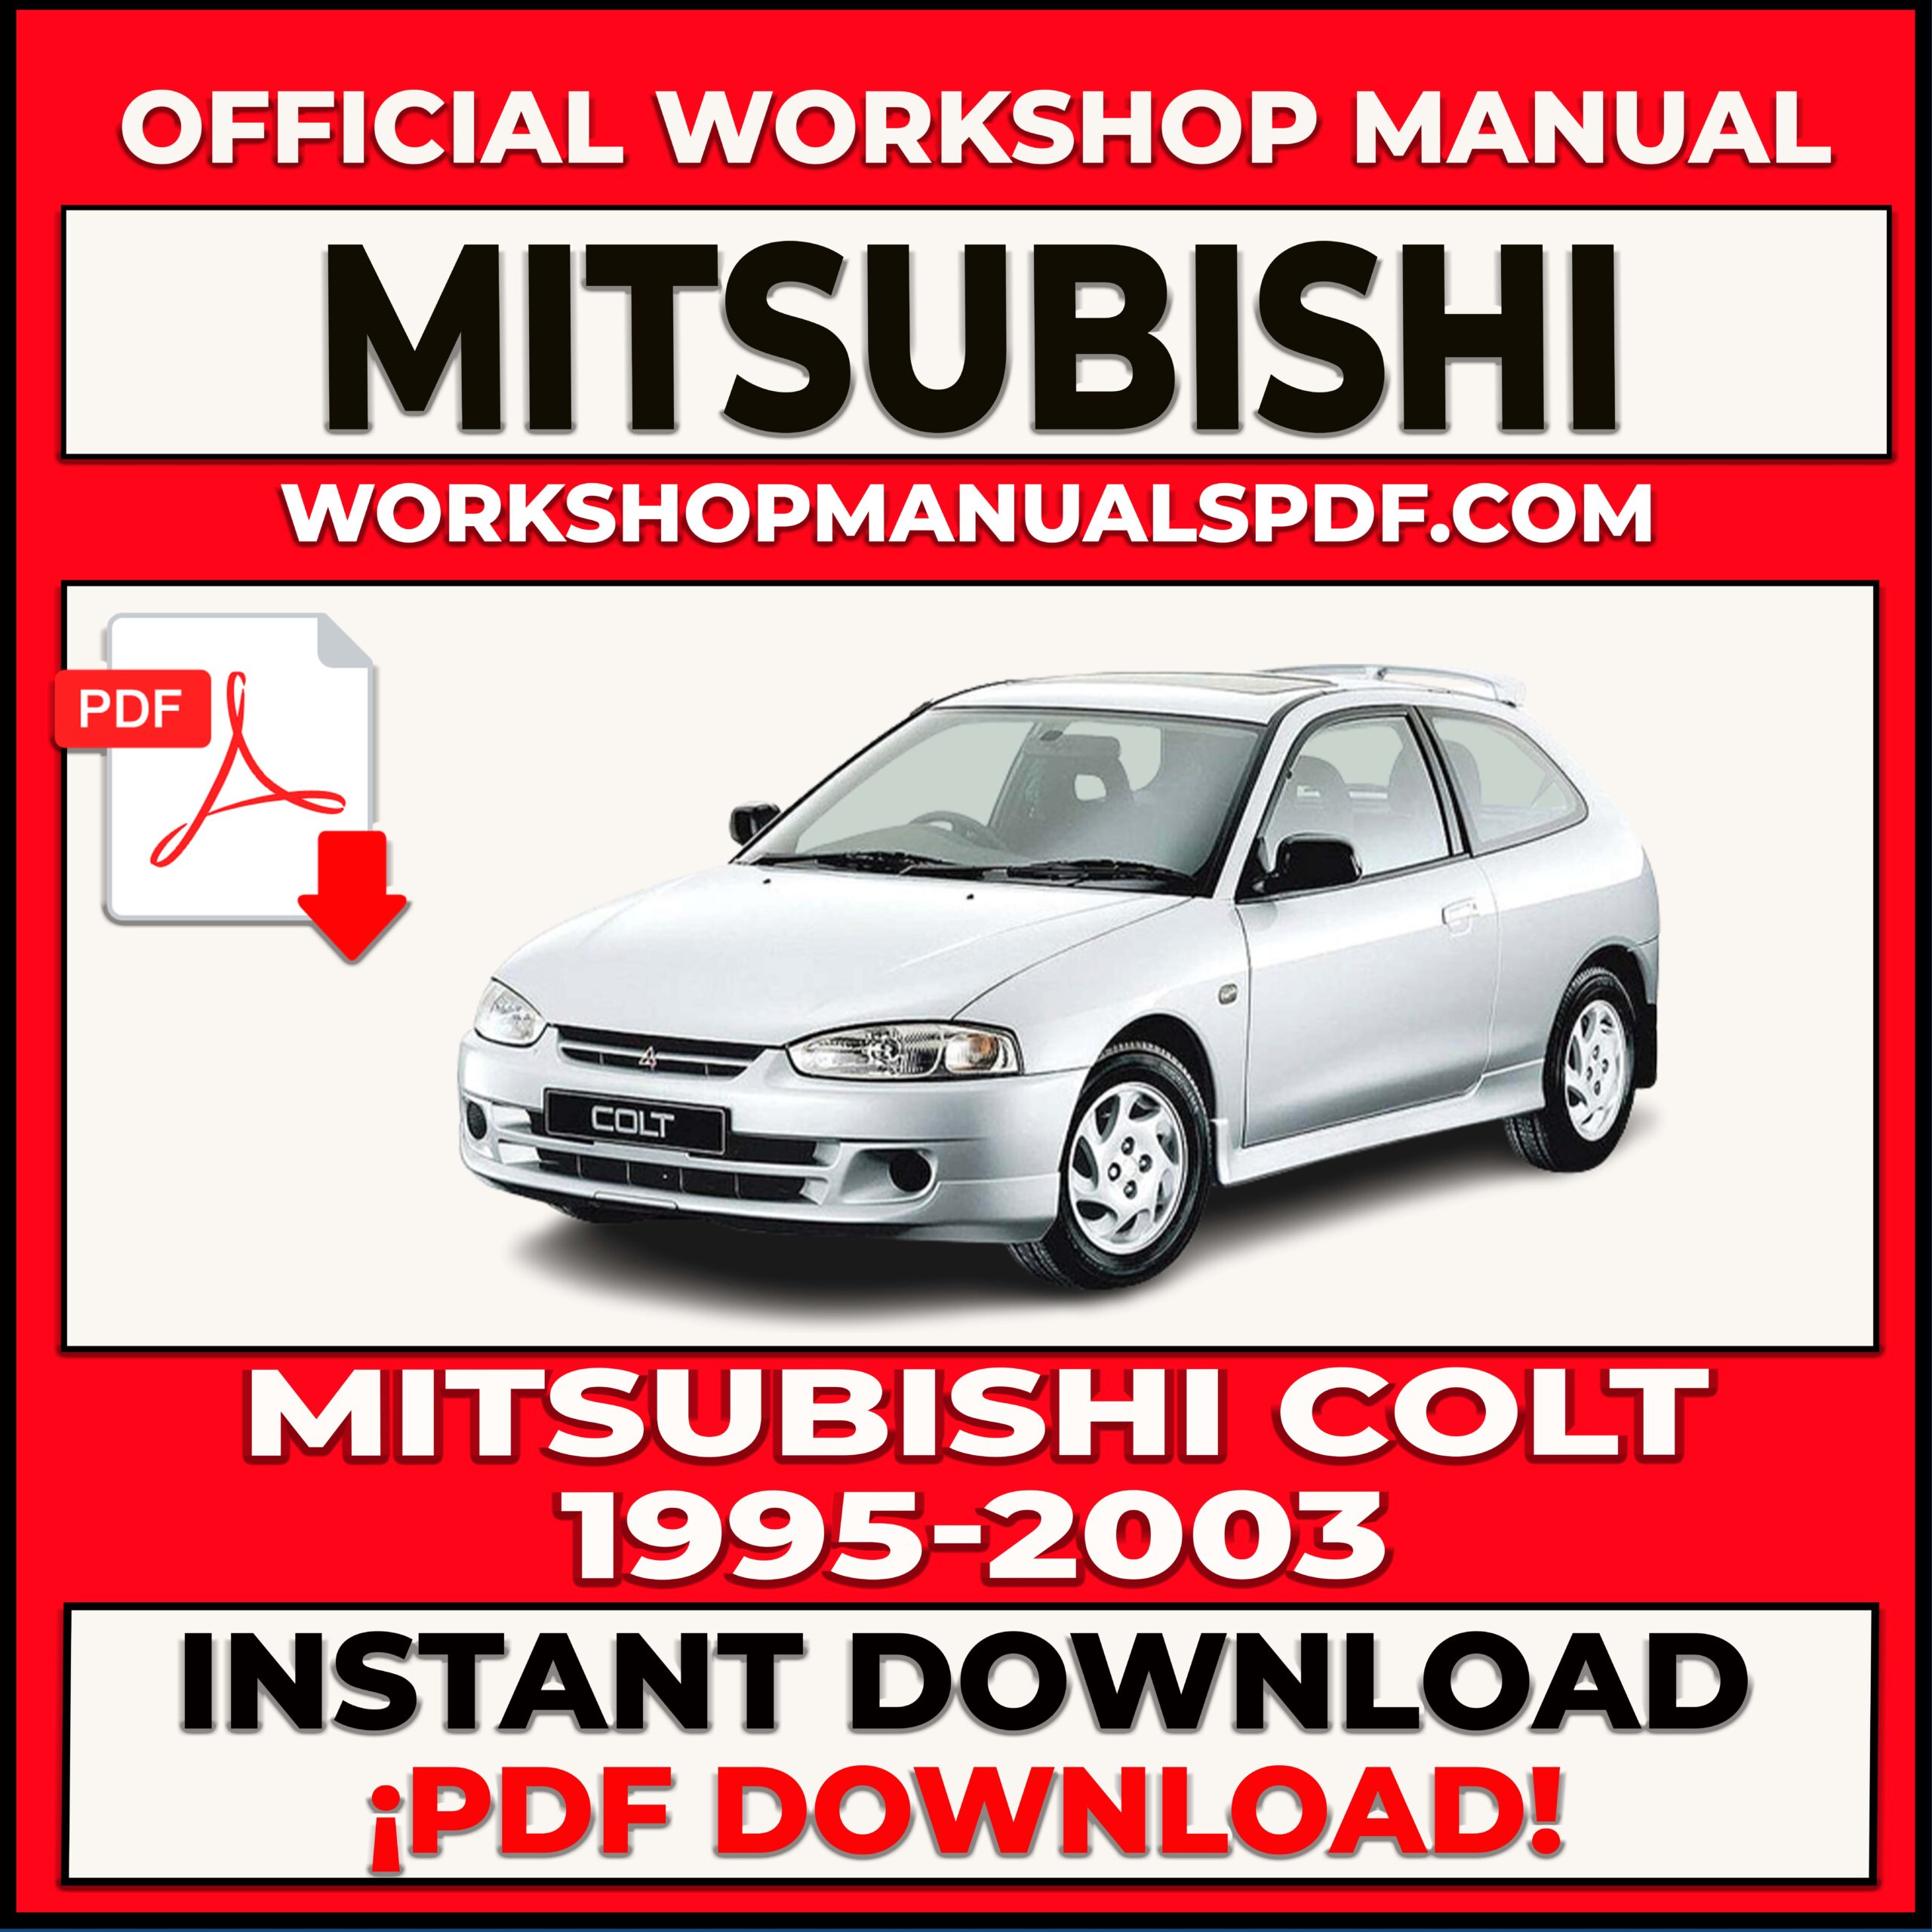 Mitsubishi Colt 1995-2003 Workshop Repair Manual